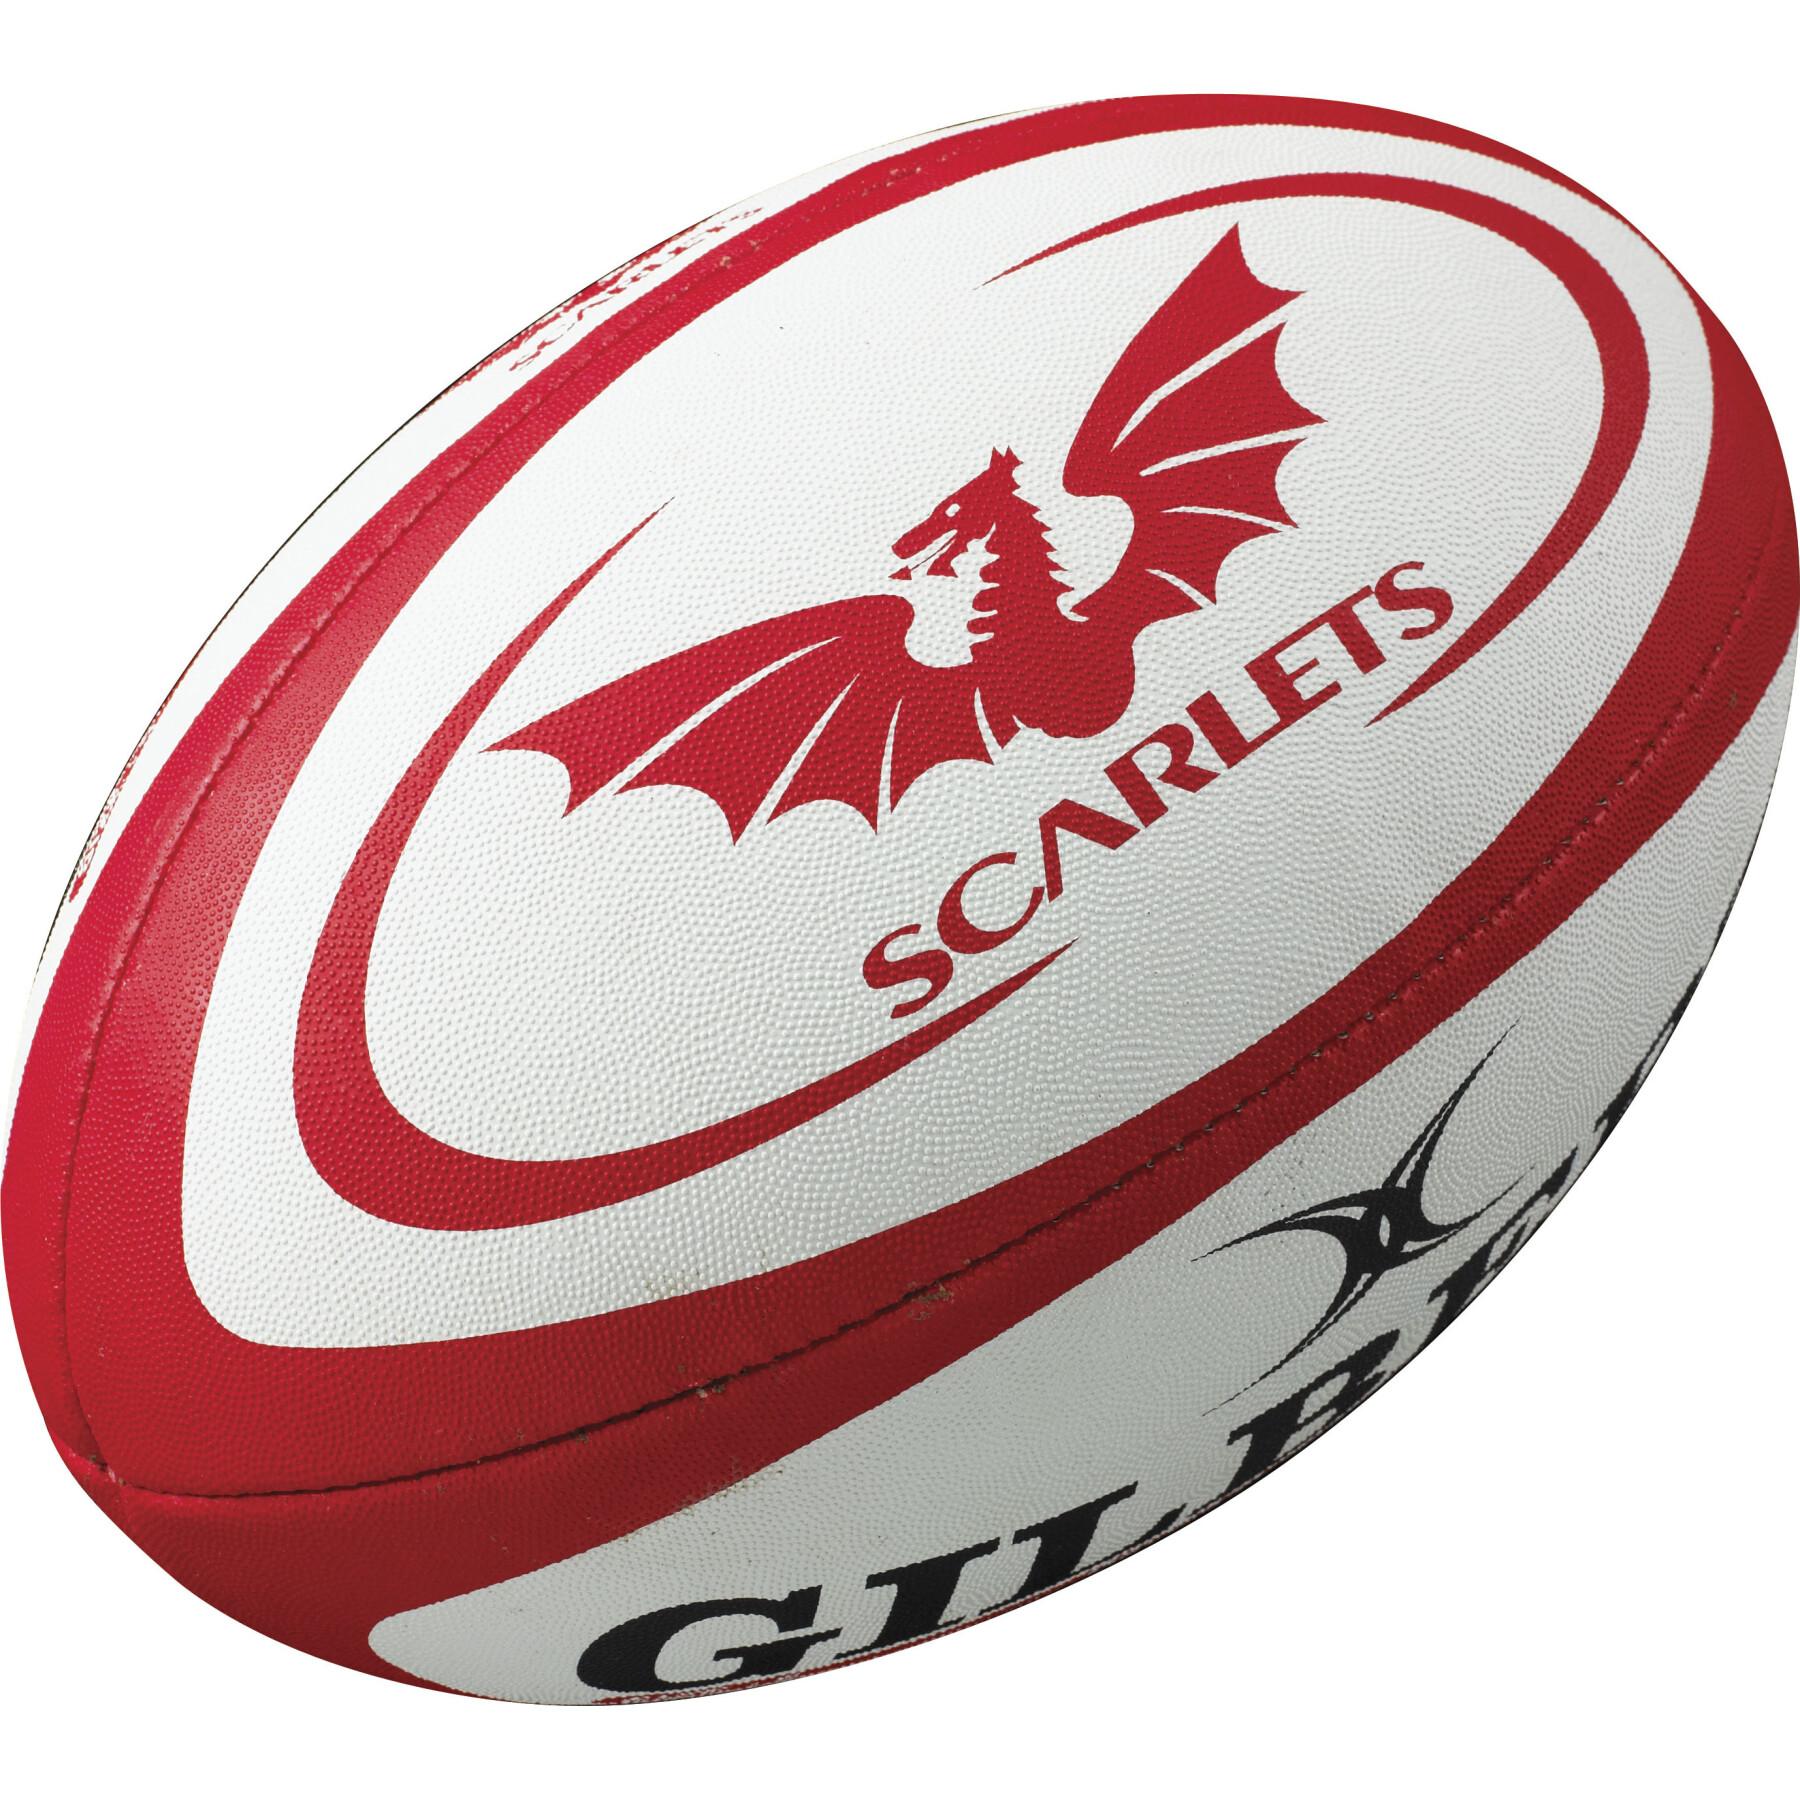 Mini balón de rugby Gilbert Scarlets (taille 1)